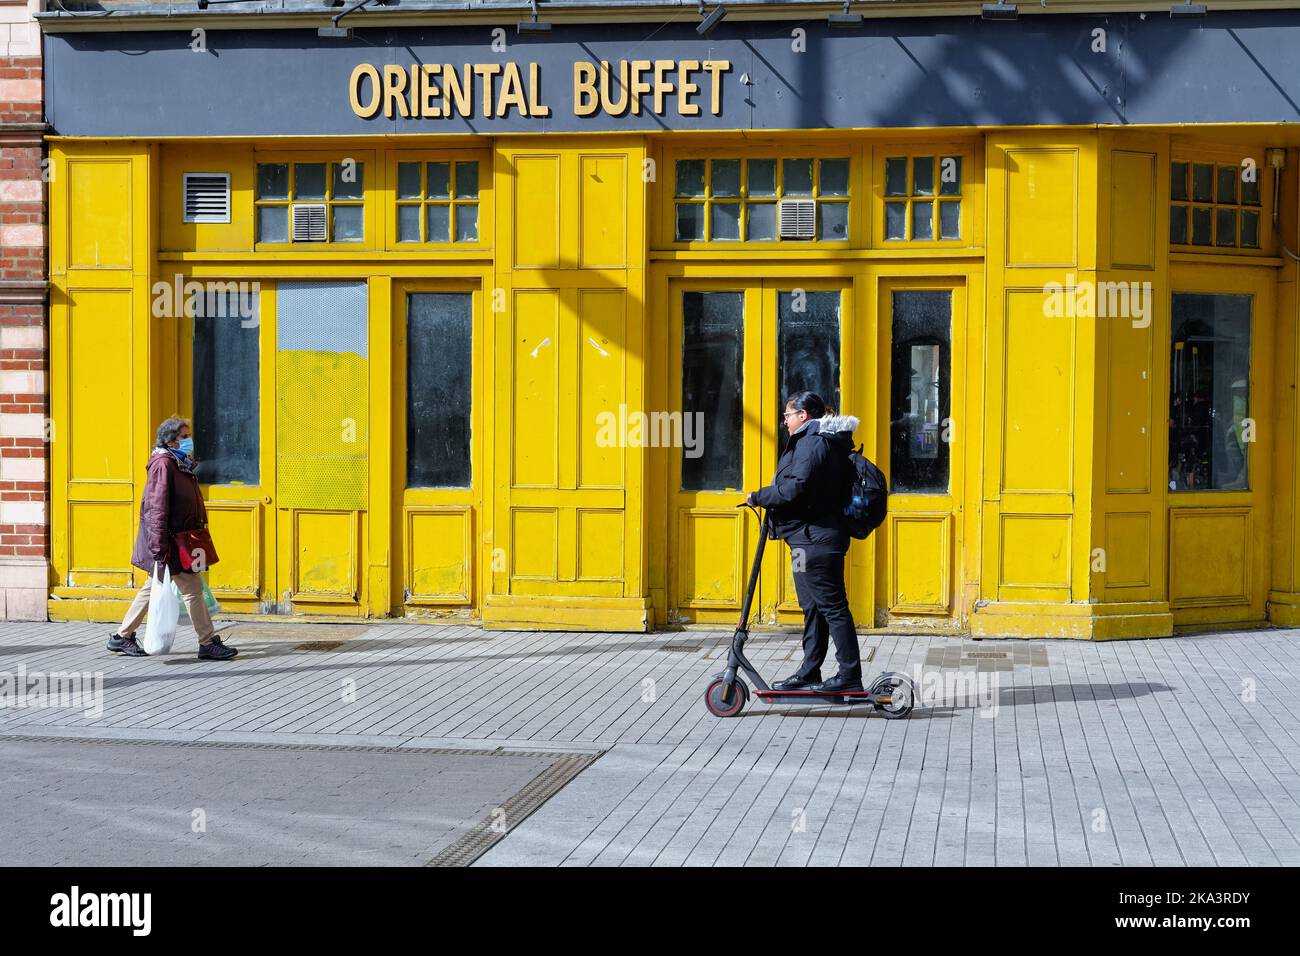 Una giovane ragazza asiatica in sella a uno scooter elettrico sul marciapiede all'esterno di un colorato e chiuso 'Oriental buffet' a Hounslow High Street West London Inghilterra UK Foto Stock